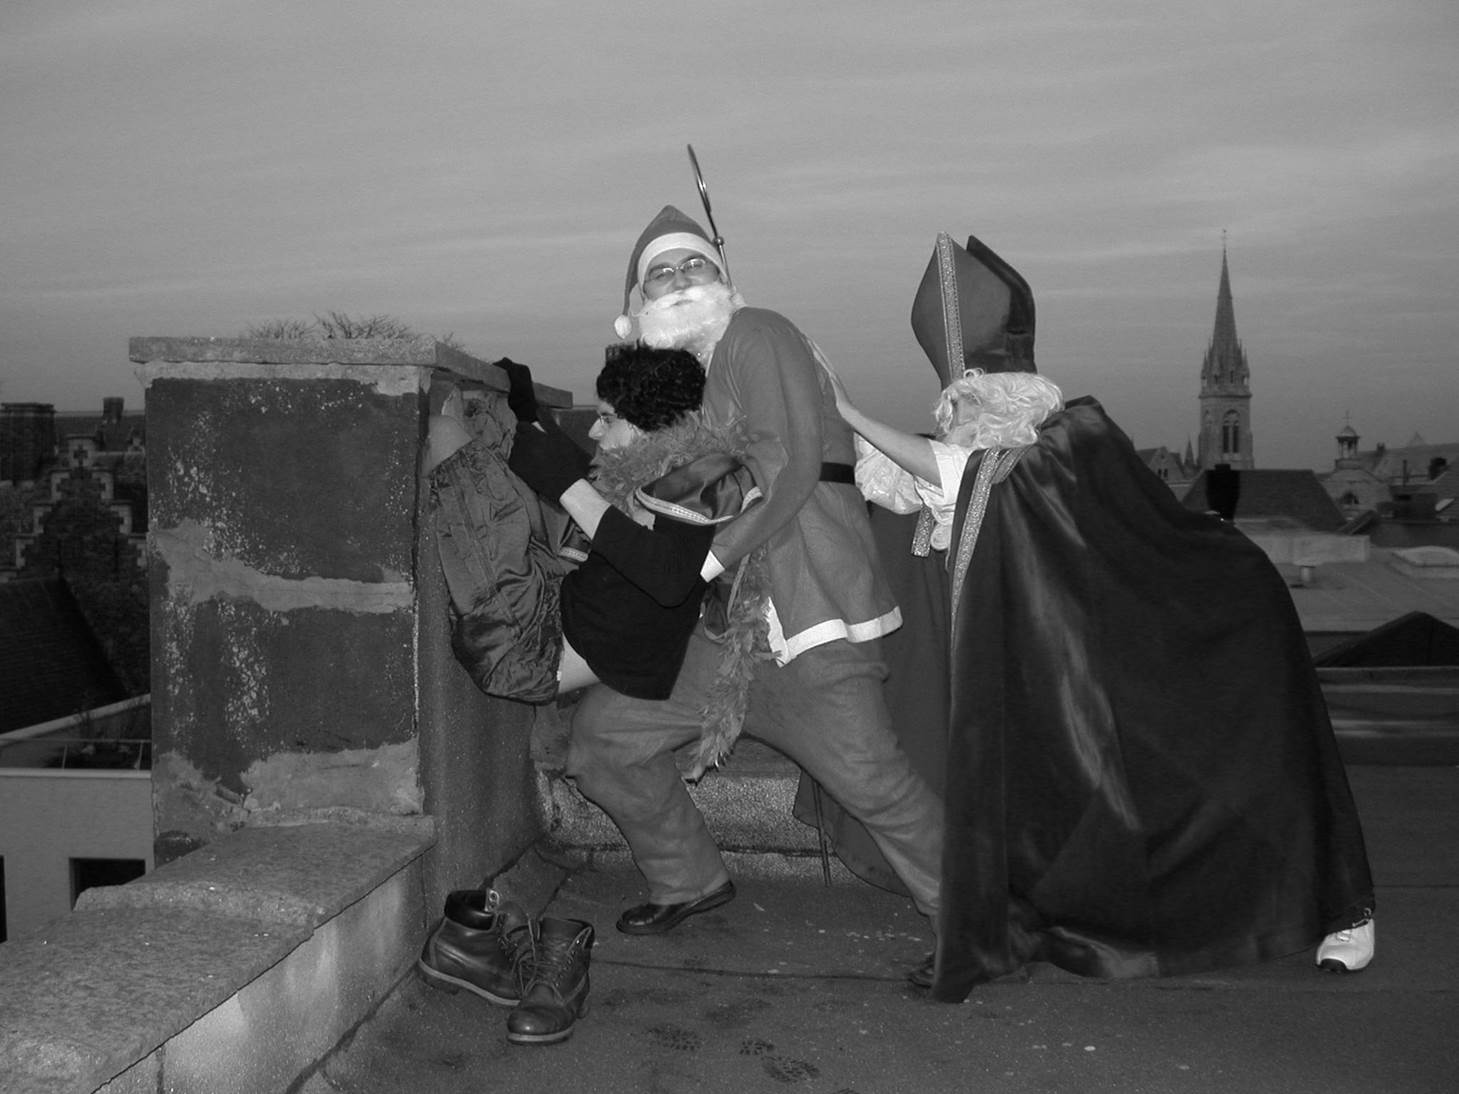 dw22 - Sinterklaas en de kerstman op het dak.jpg